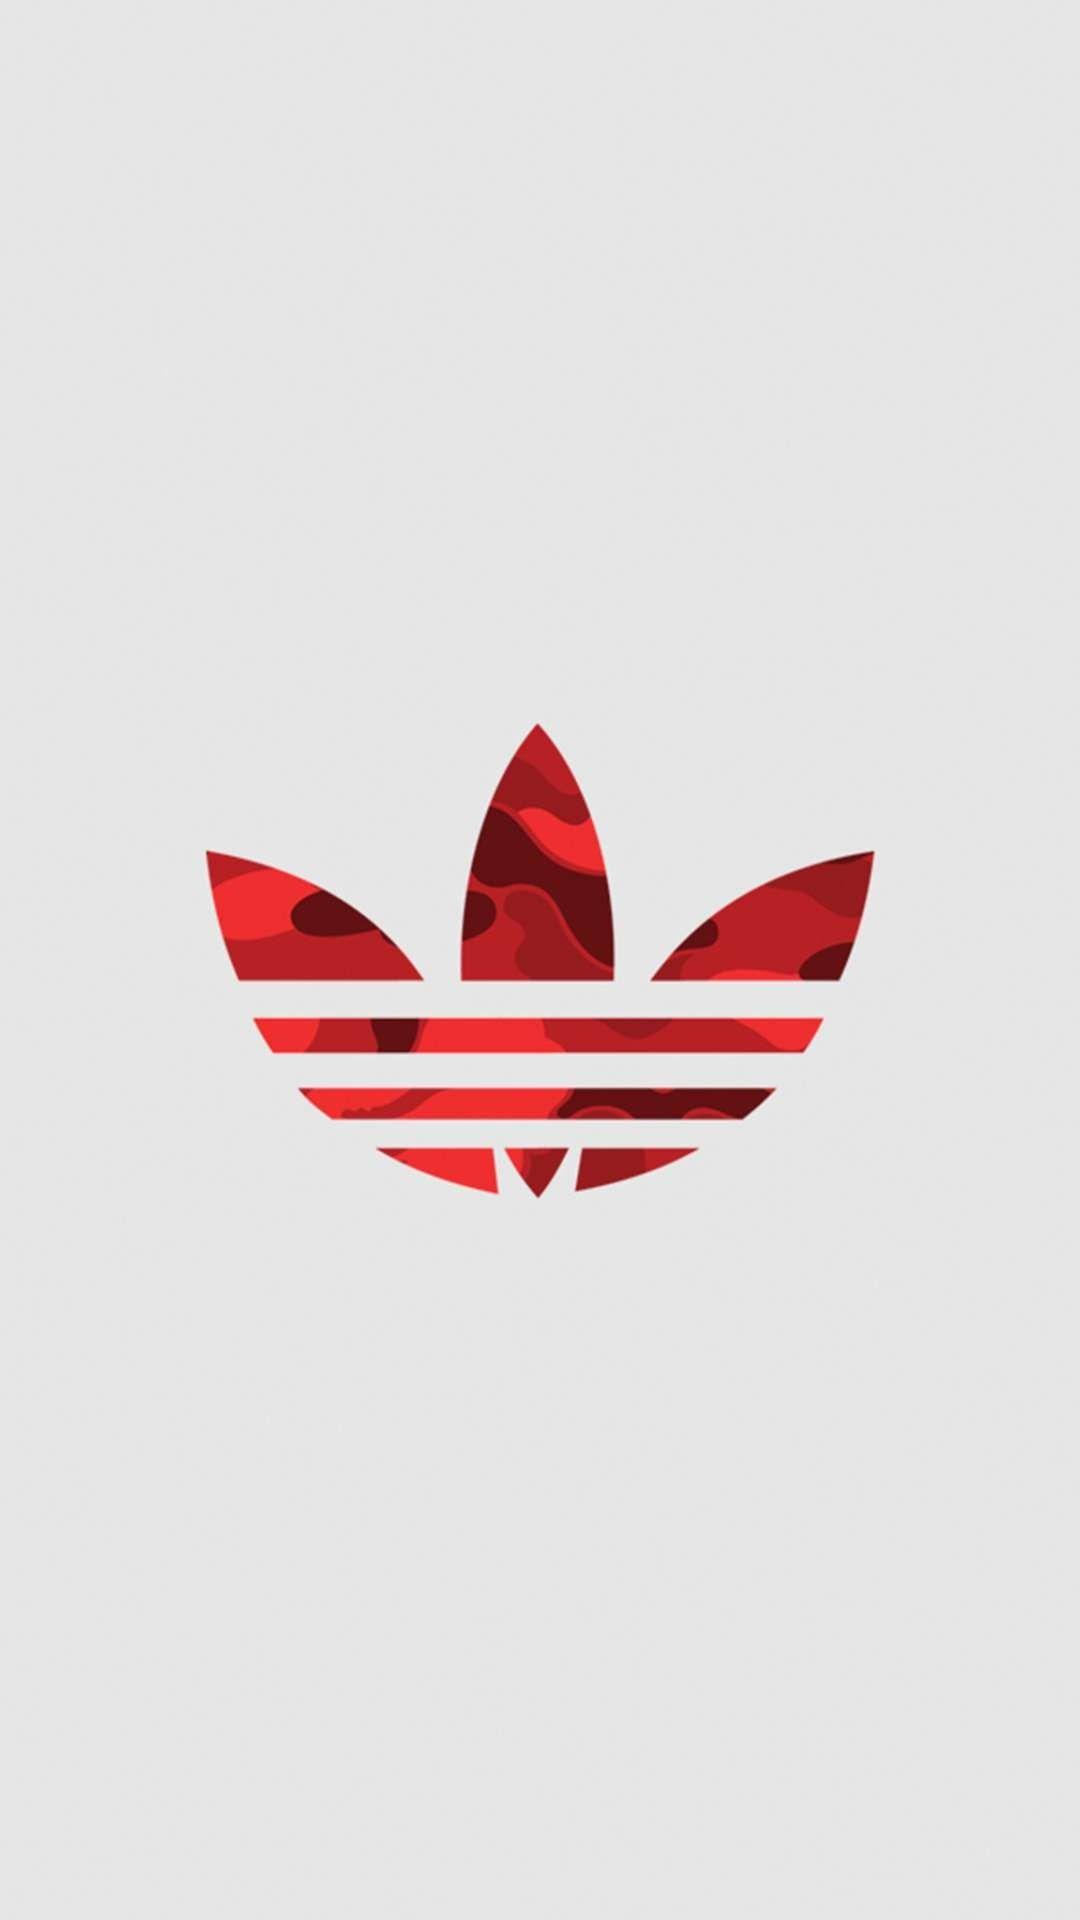 Supreme Adidas Logo - Pin by Samantha Keller on Nike & Adidas | Wallpaper, Iphone ...